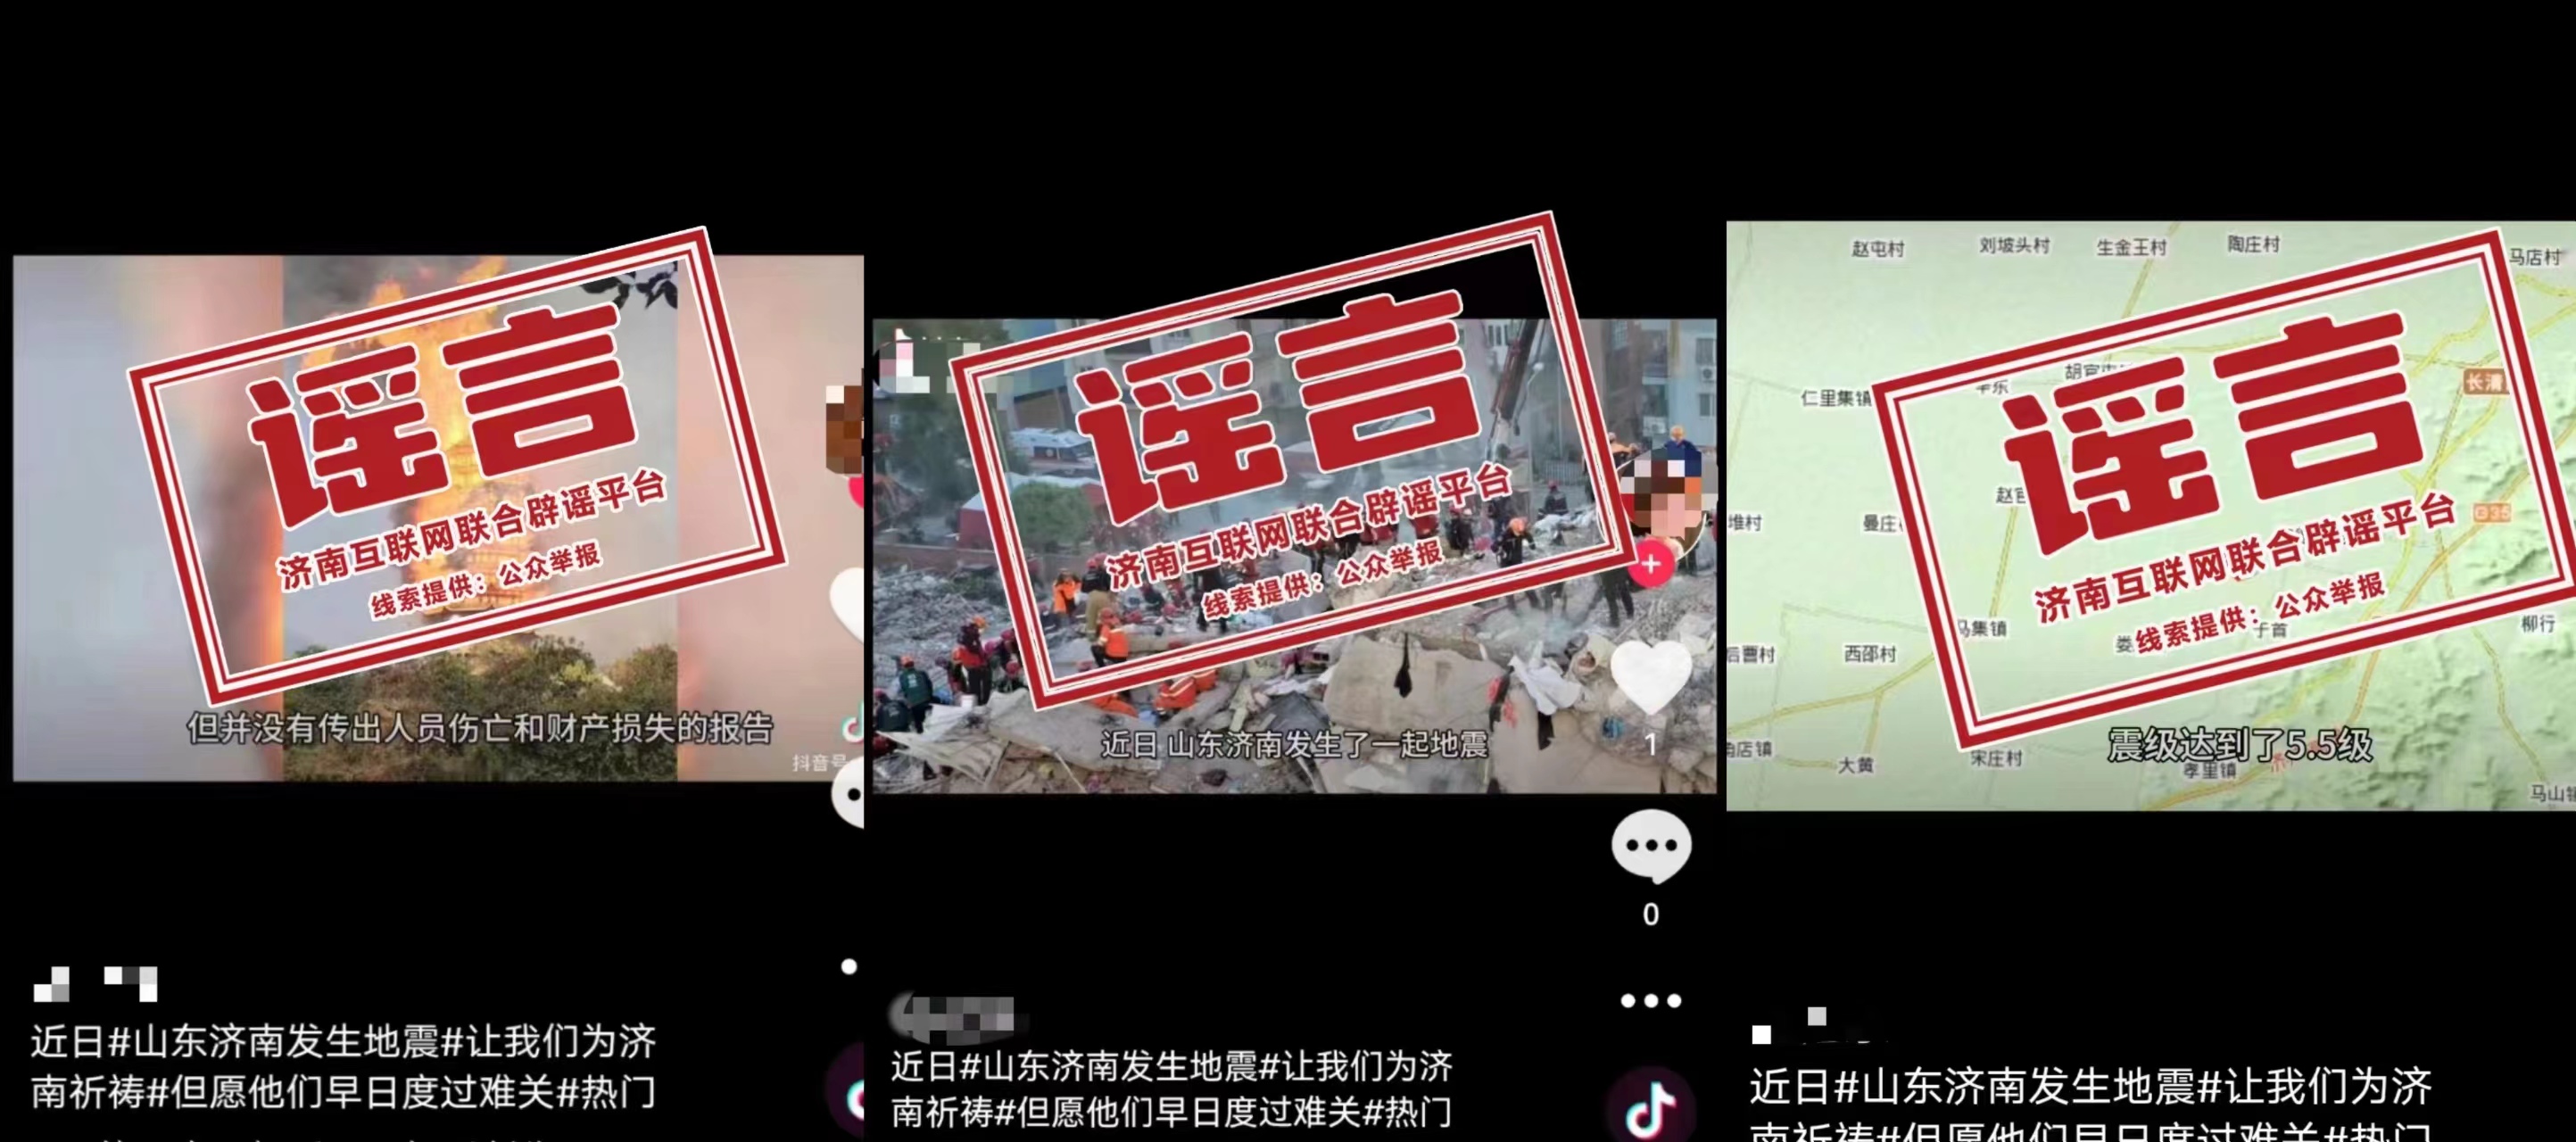 发布谣言的社交平台账号内容 图源：中国互联网联合辟谣平台